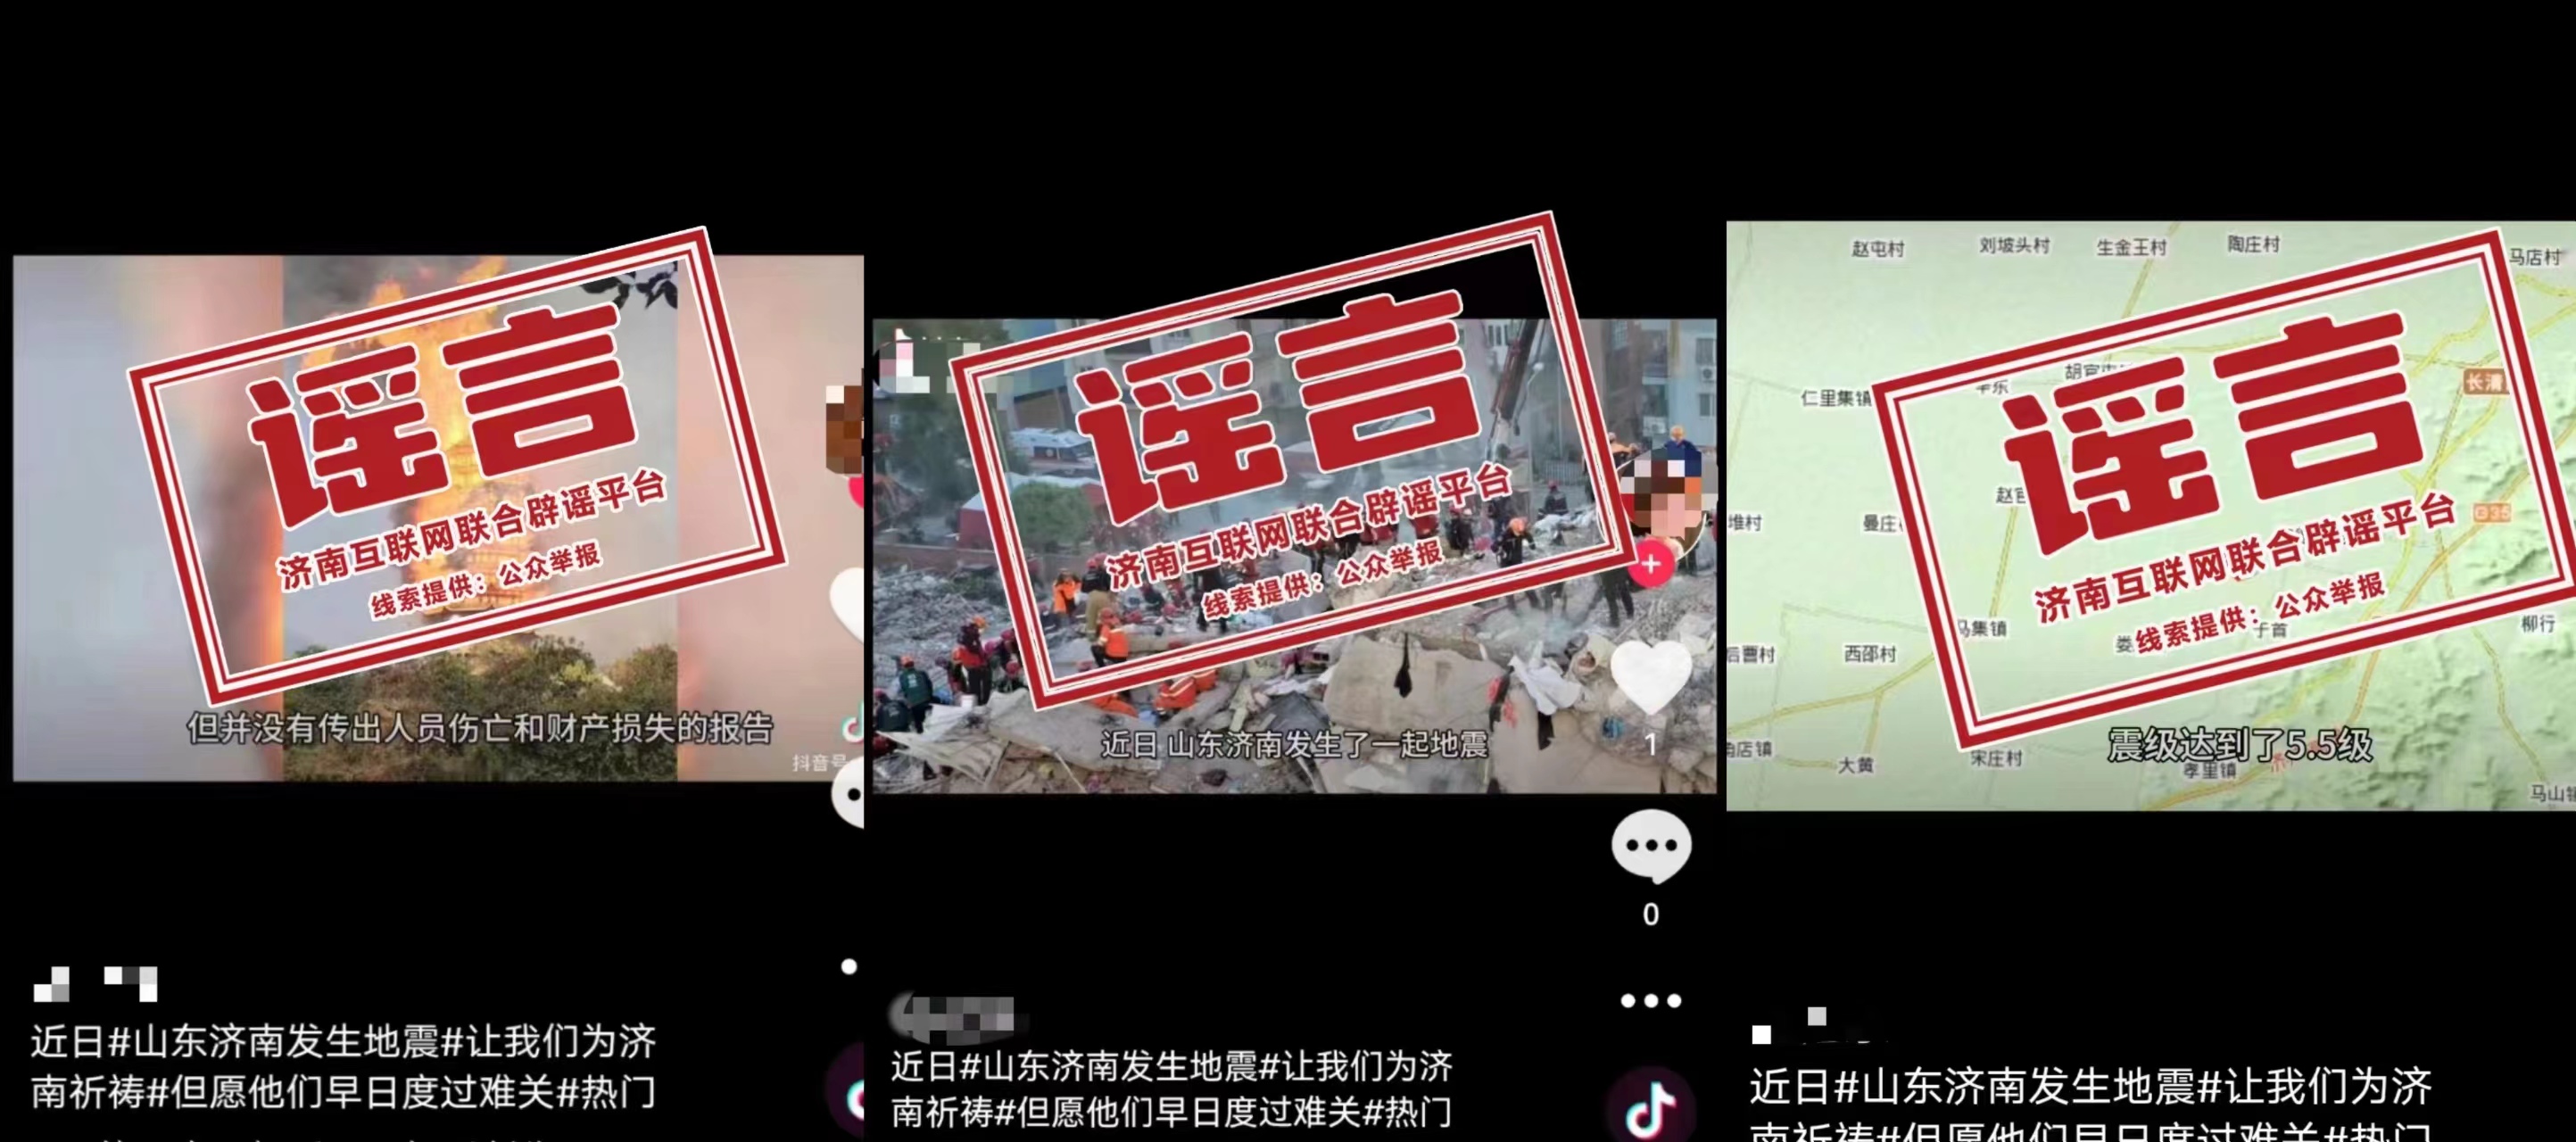 发布谣言的社交平台账号内容 图源：中国互联网联合辟谣平台